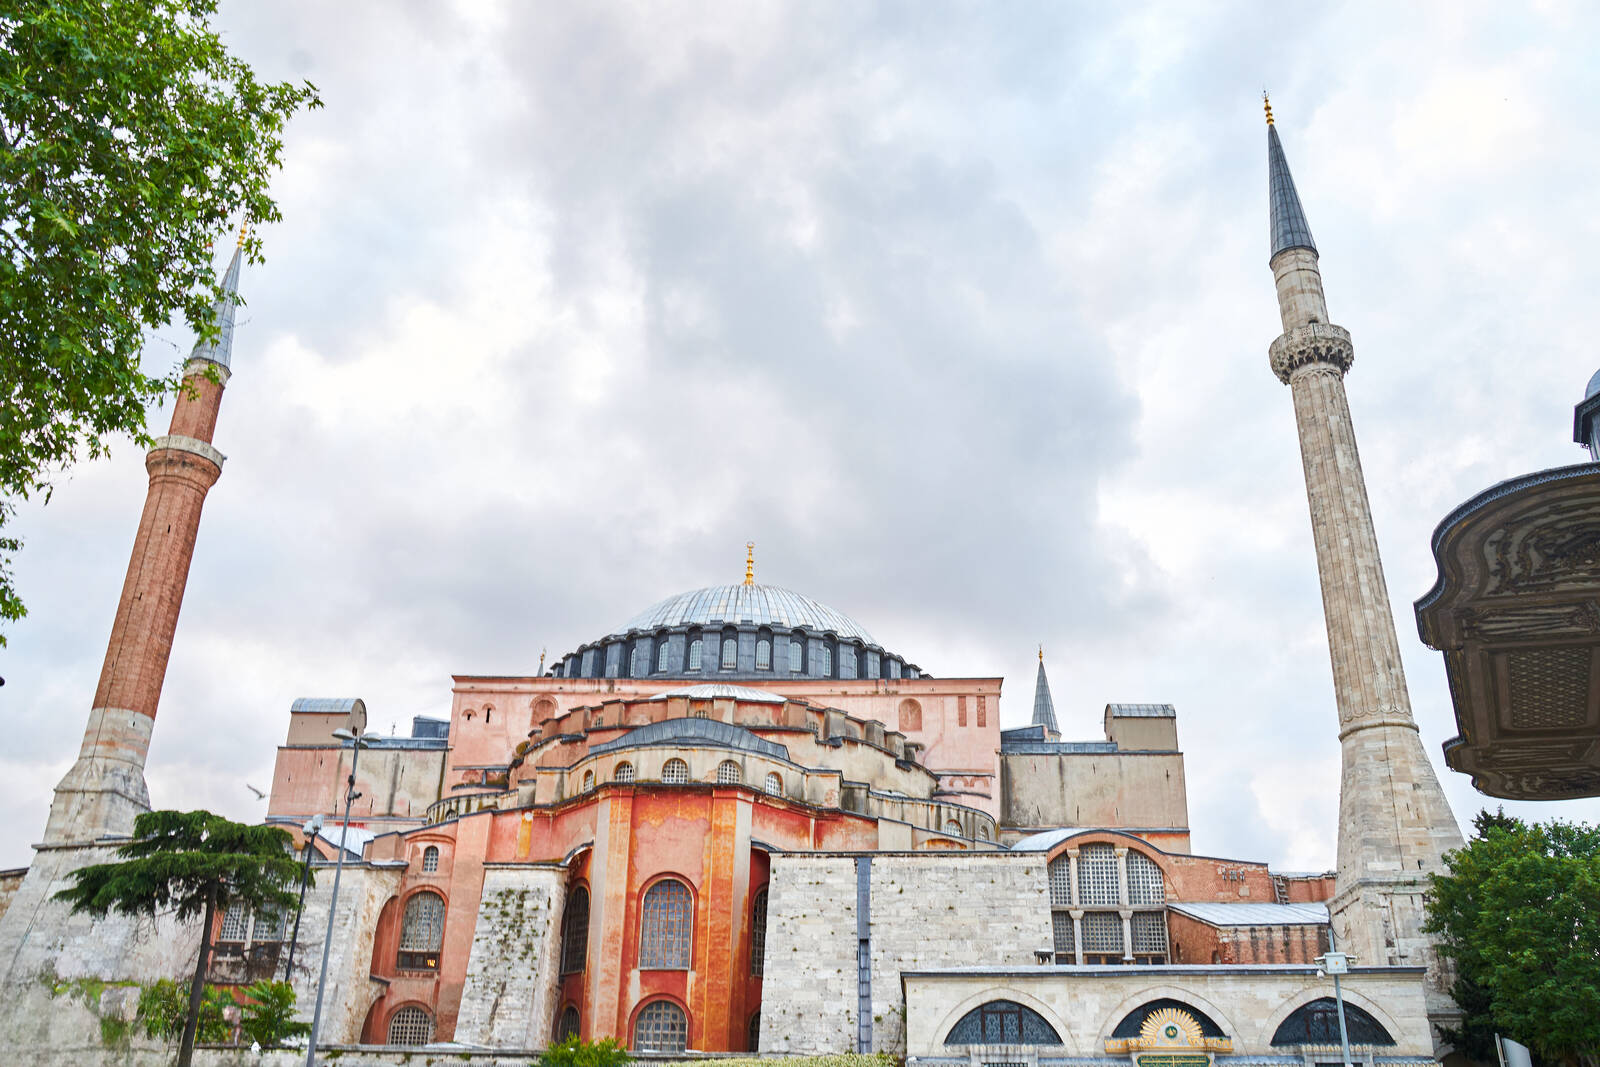 Image of Hagia Sophia by Rostikslav Nepomnyaschiy